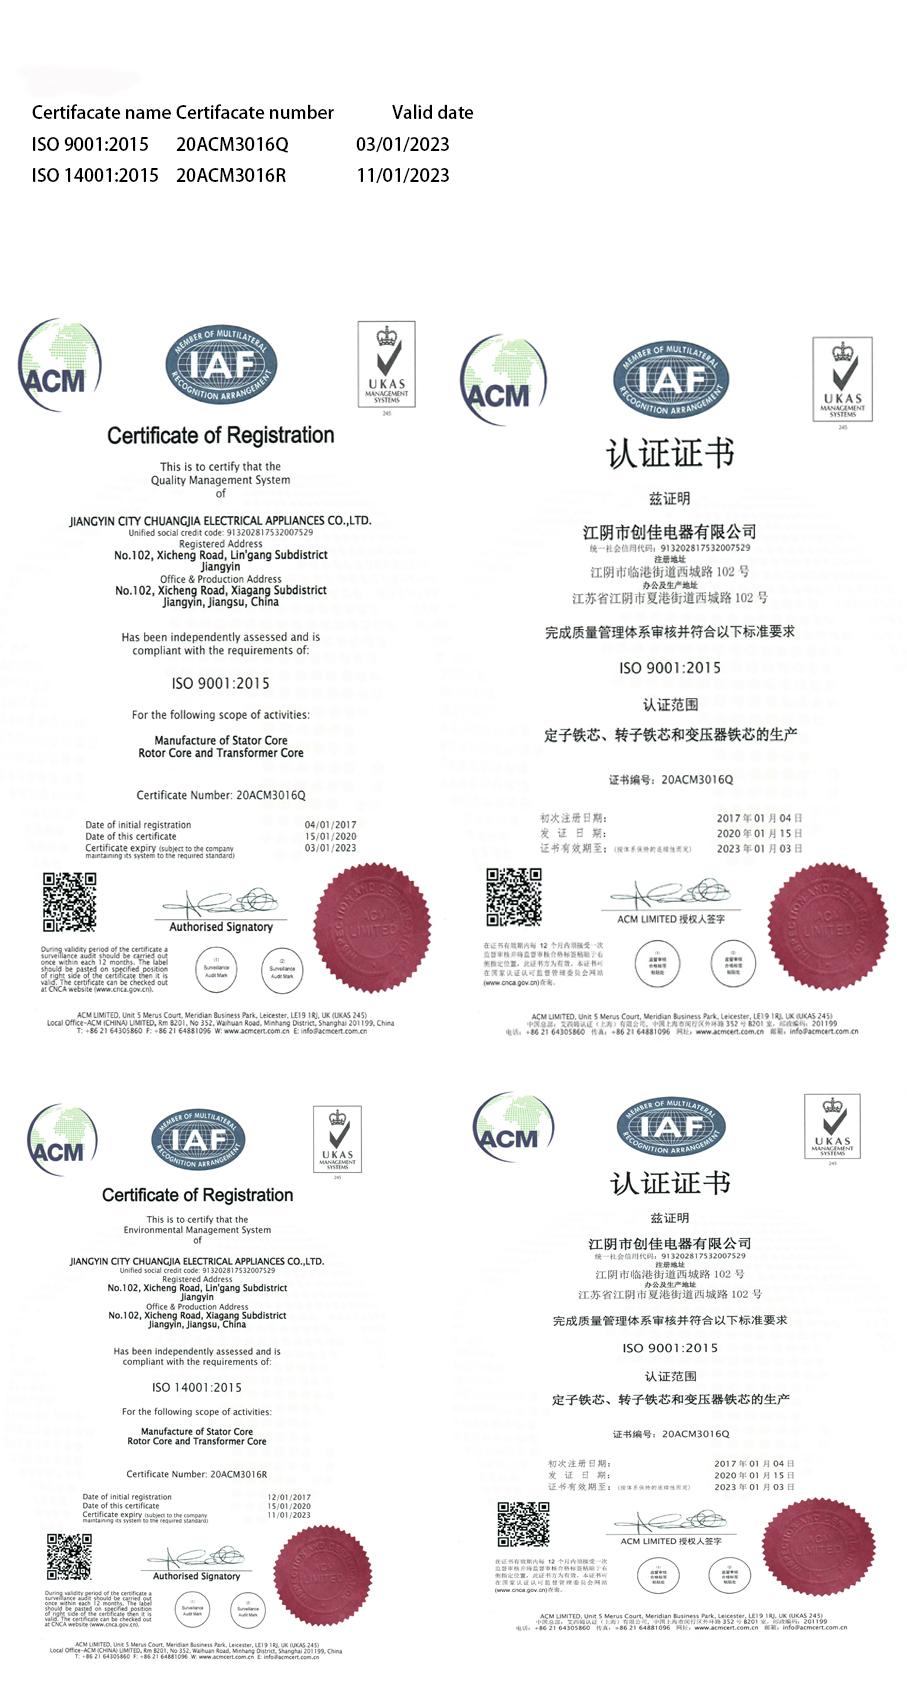 Chuangjia EI 133.2 STALNY STALOWY Rdzeń Transformatorowy